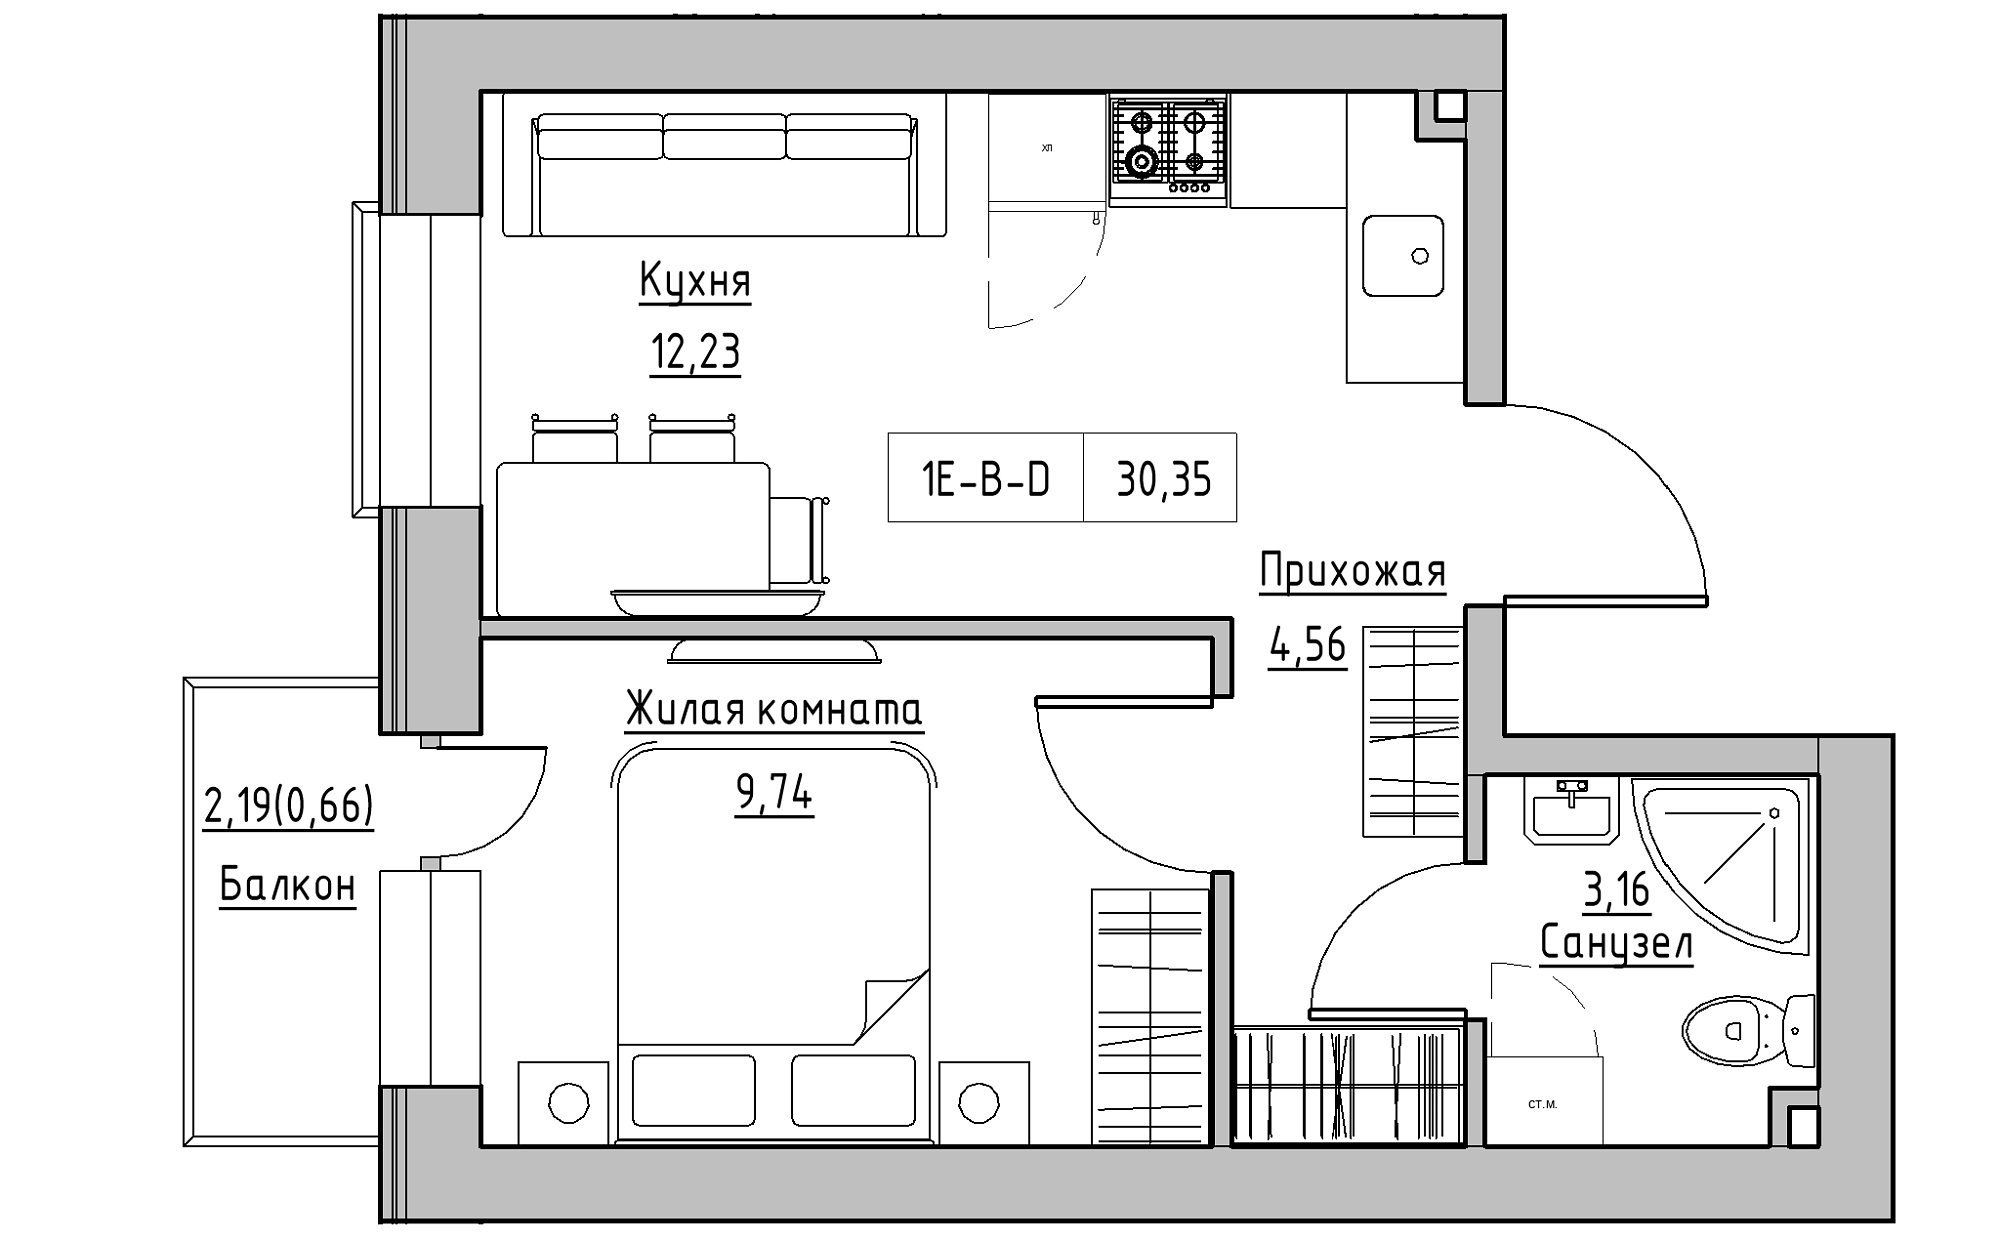 Планировка 1-к квартира площей 30.35м2, KS-022-03/0012.